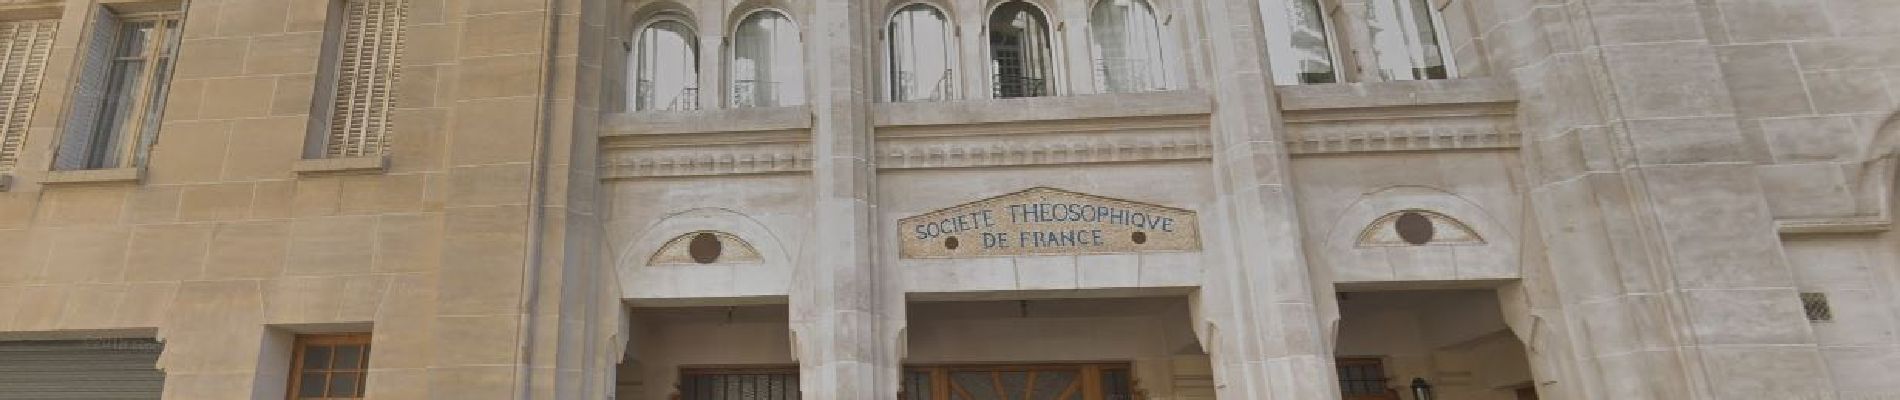 Point of interest Paris - Immeuble de la societé Théosophique de France - Photo